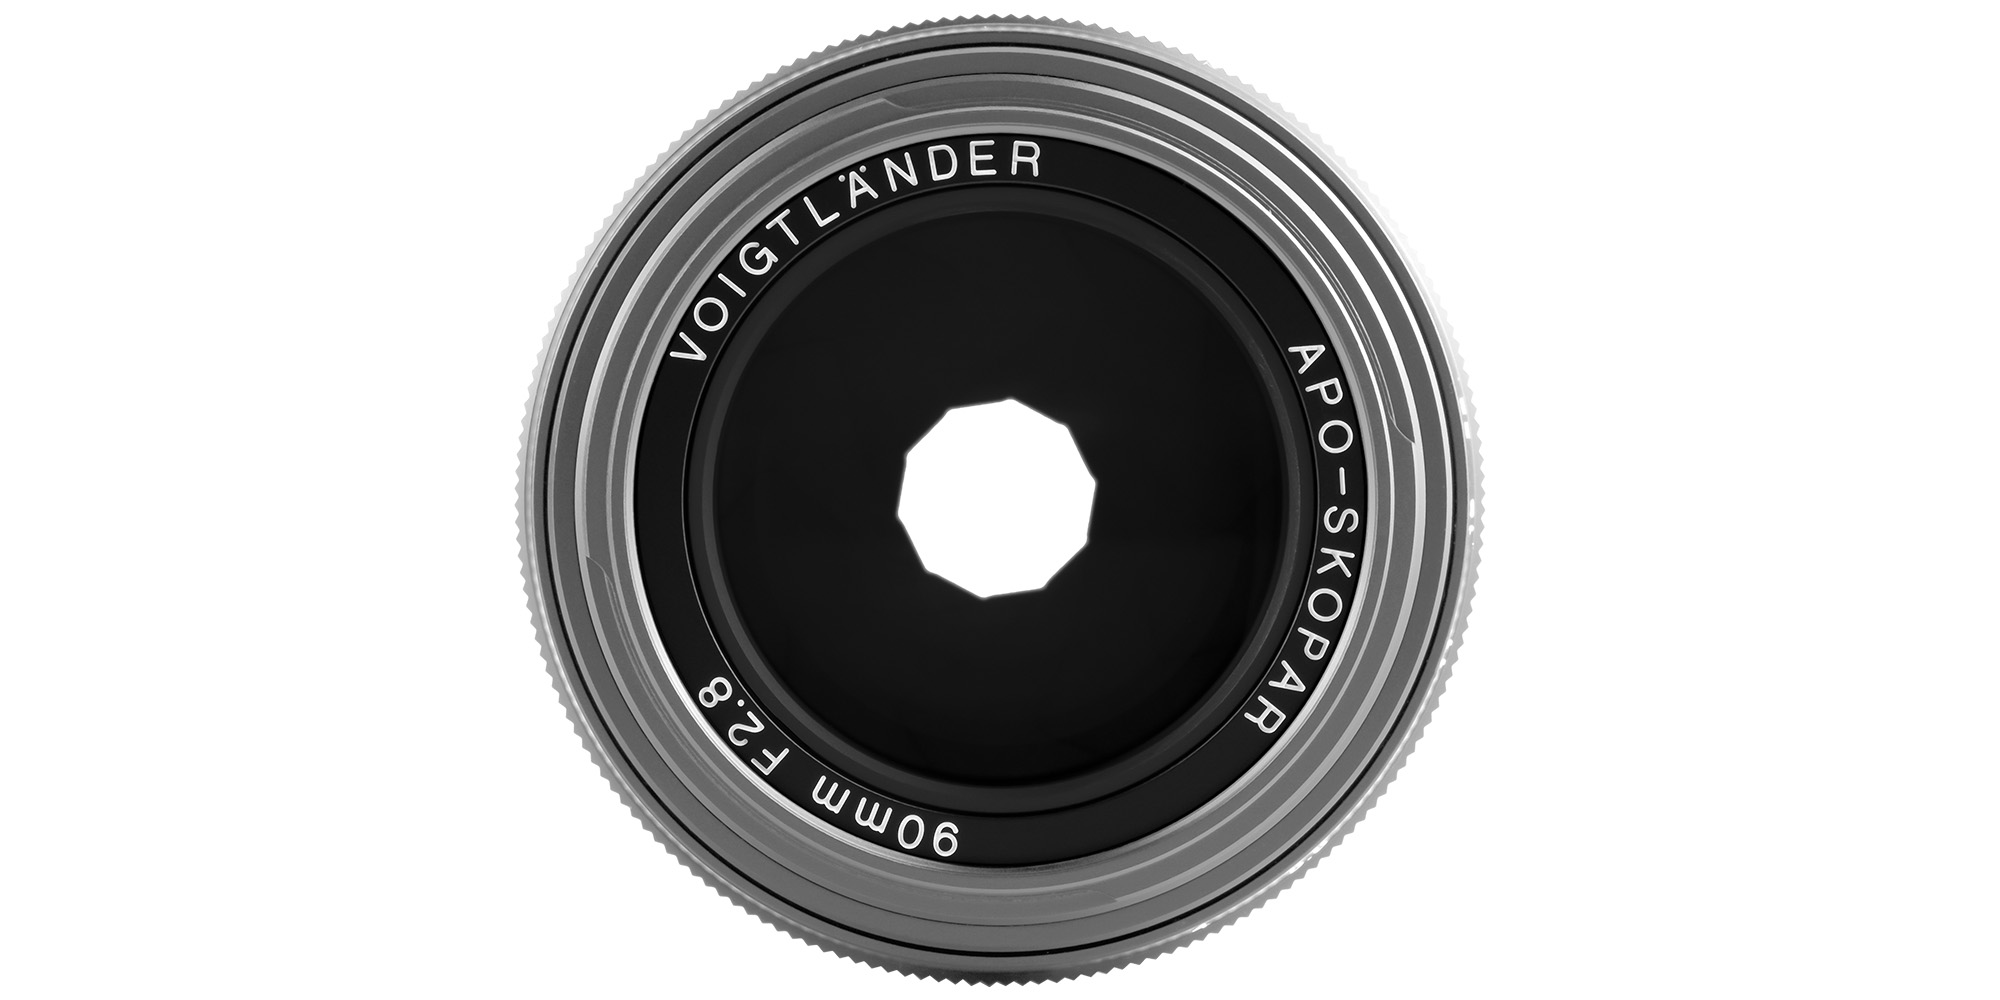 Obiektyw Voigtlander APO Skopar 90 mm f/2,8 do Leica M - srebrny - Płynna kontrola nad światłem